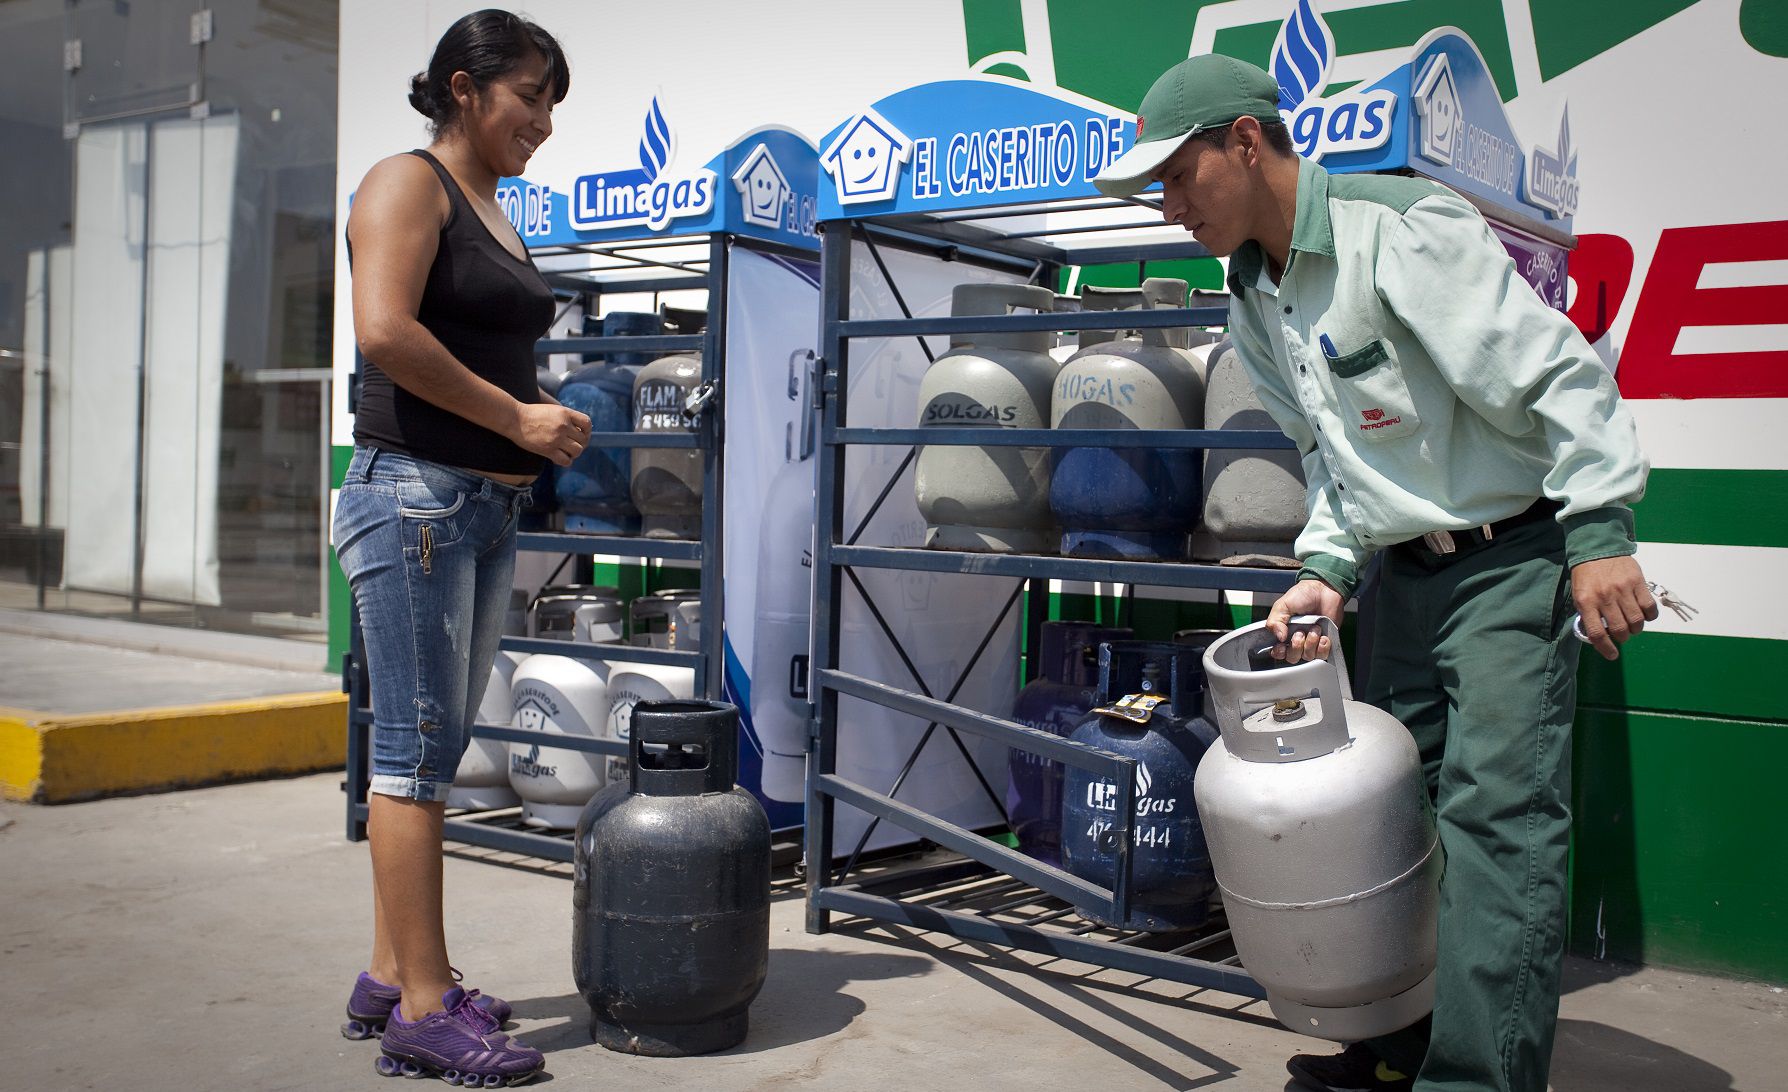 “El  promedio del precio del balón de 10 kilos entre los países de América Latina, que no reciben subsidios, es de S/45. Nuestro promedio de precios es S/39,1. Es claro que estamos muy por debajo del promedio", dice Cabada. (Foto: Mayer Abanto / El Comercio)